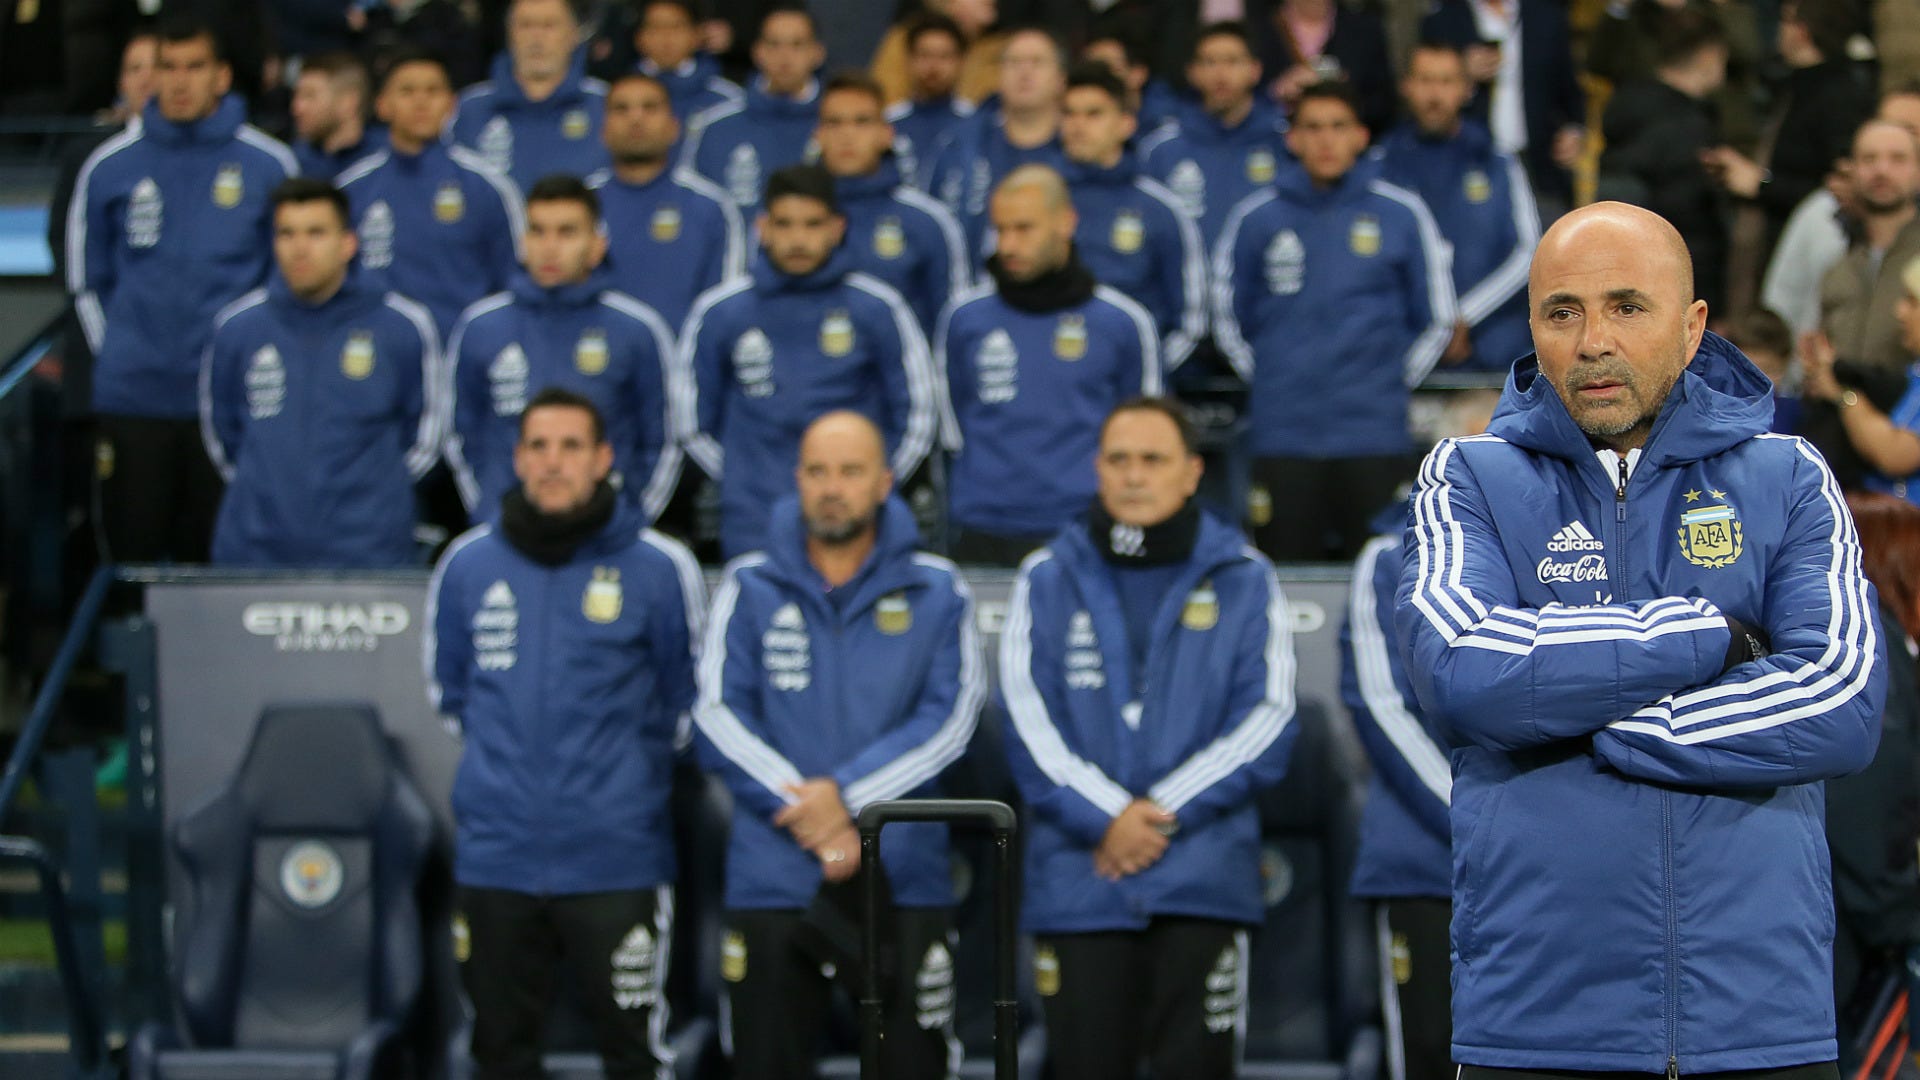 Quiénes son 23 convocados de Sampaoli para la Selección Argentina en el Mundial 2018? | Goal.com Espana